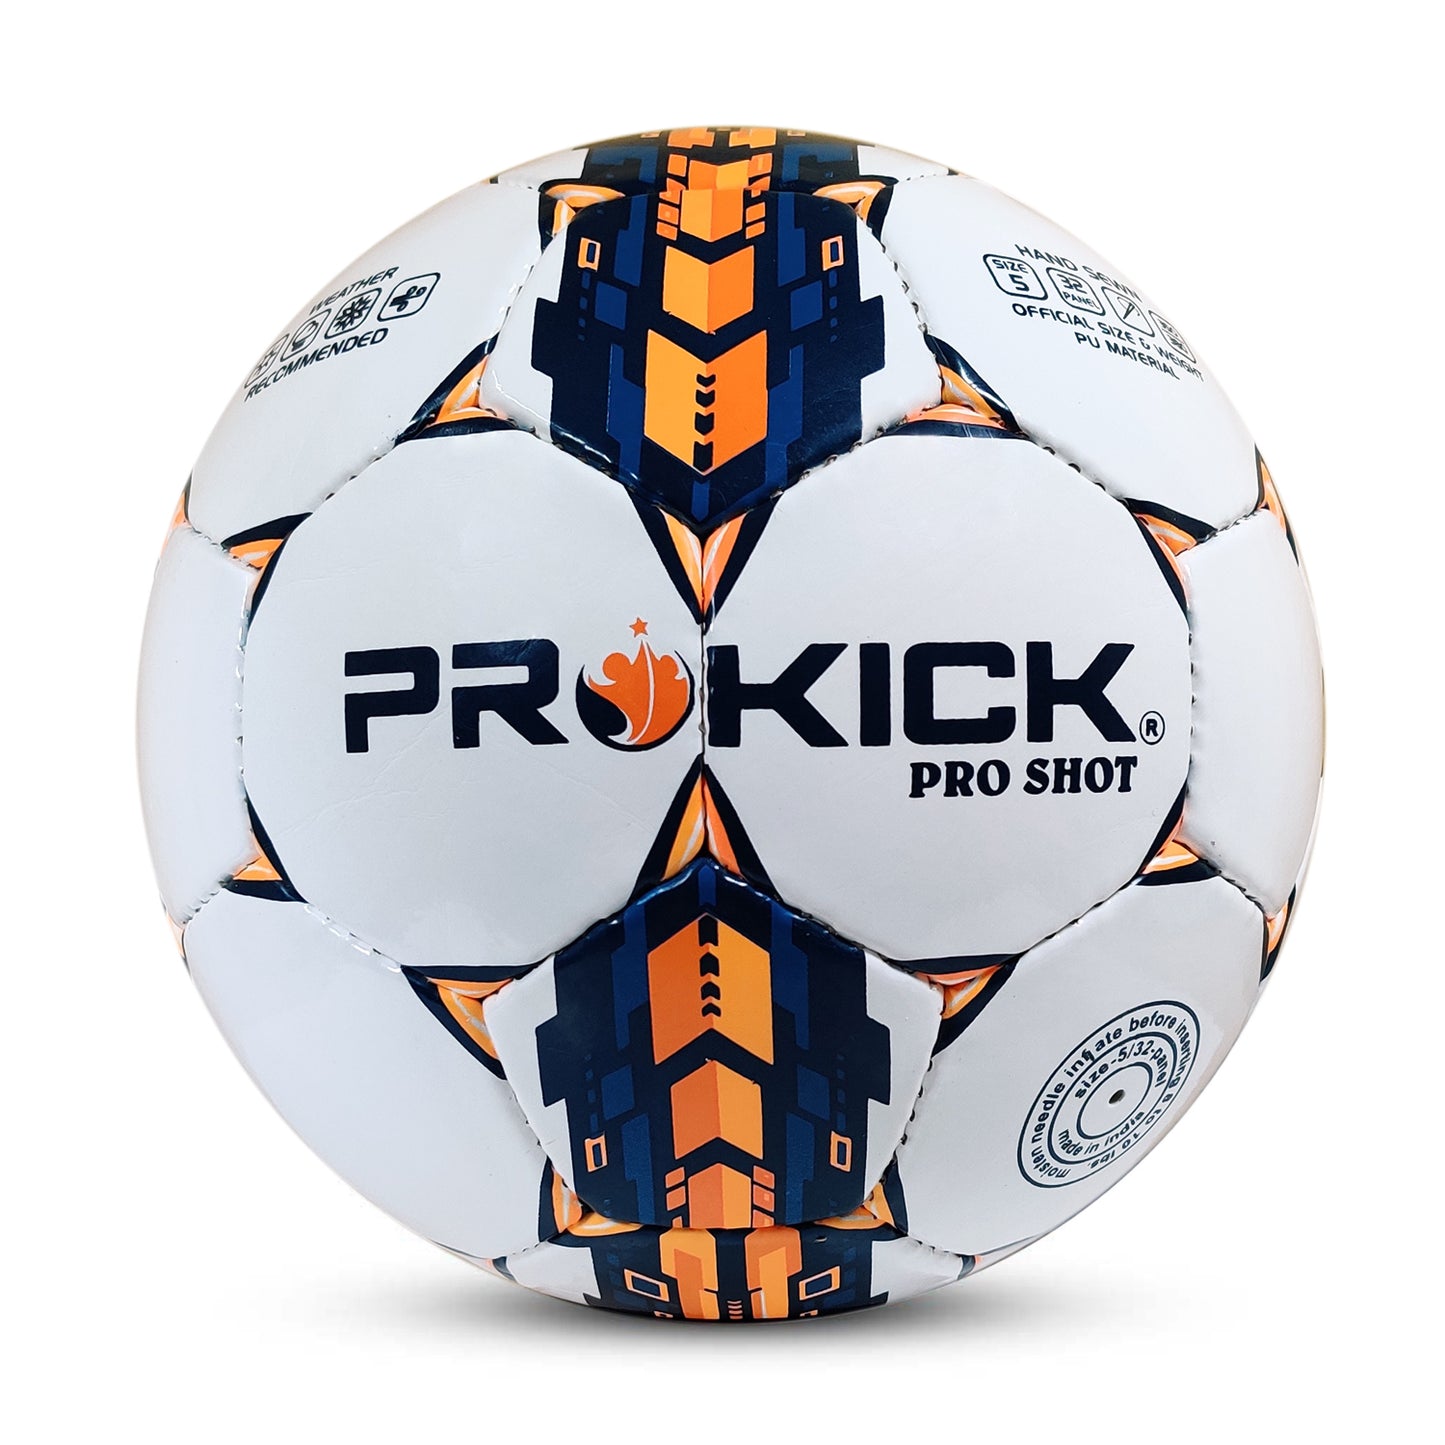 Prokick Pro Shot Hand Stitched 32 Panel PU Football, Size 5 (White